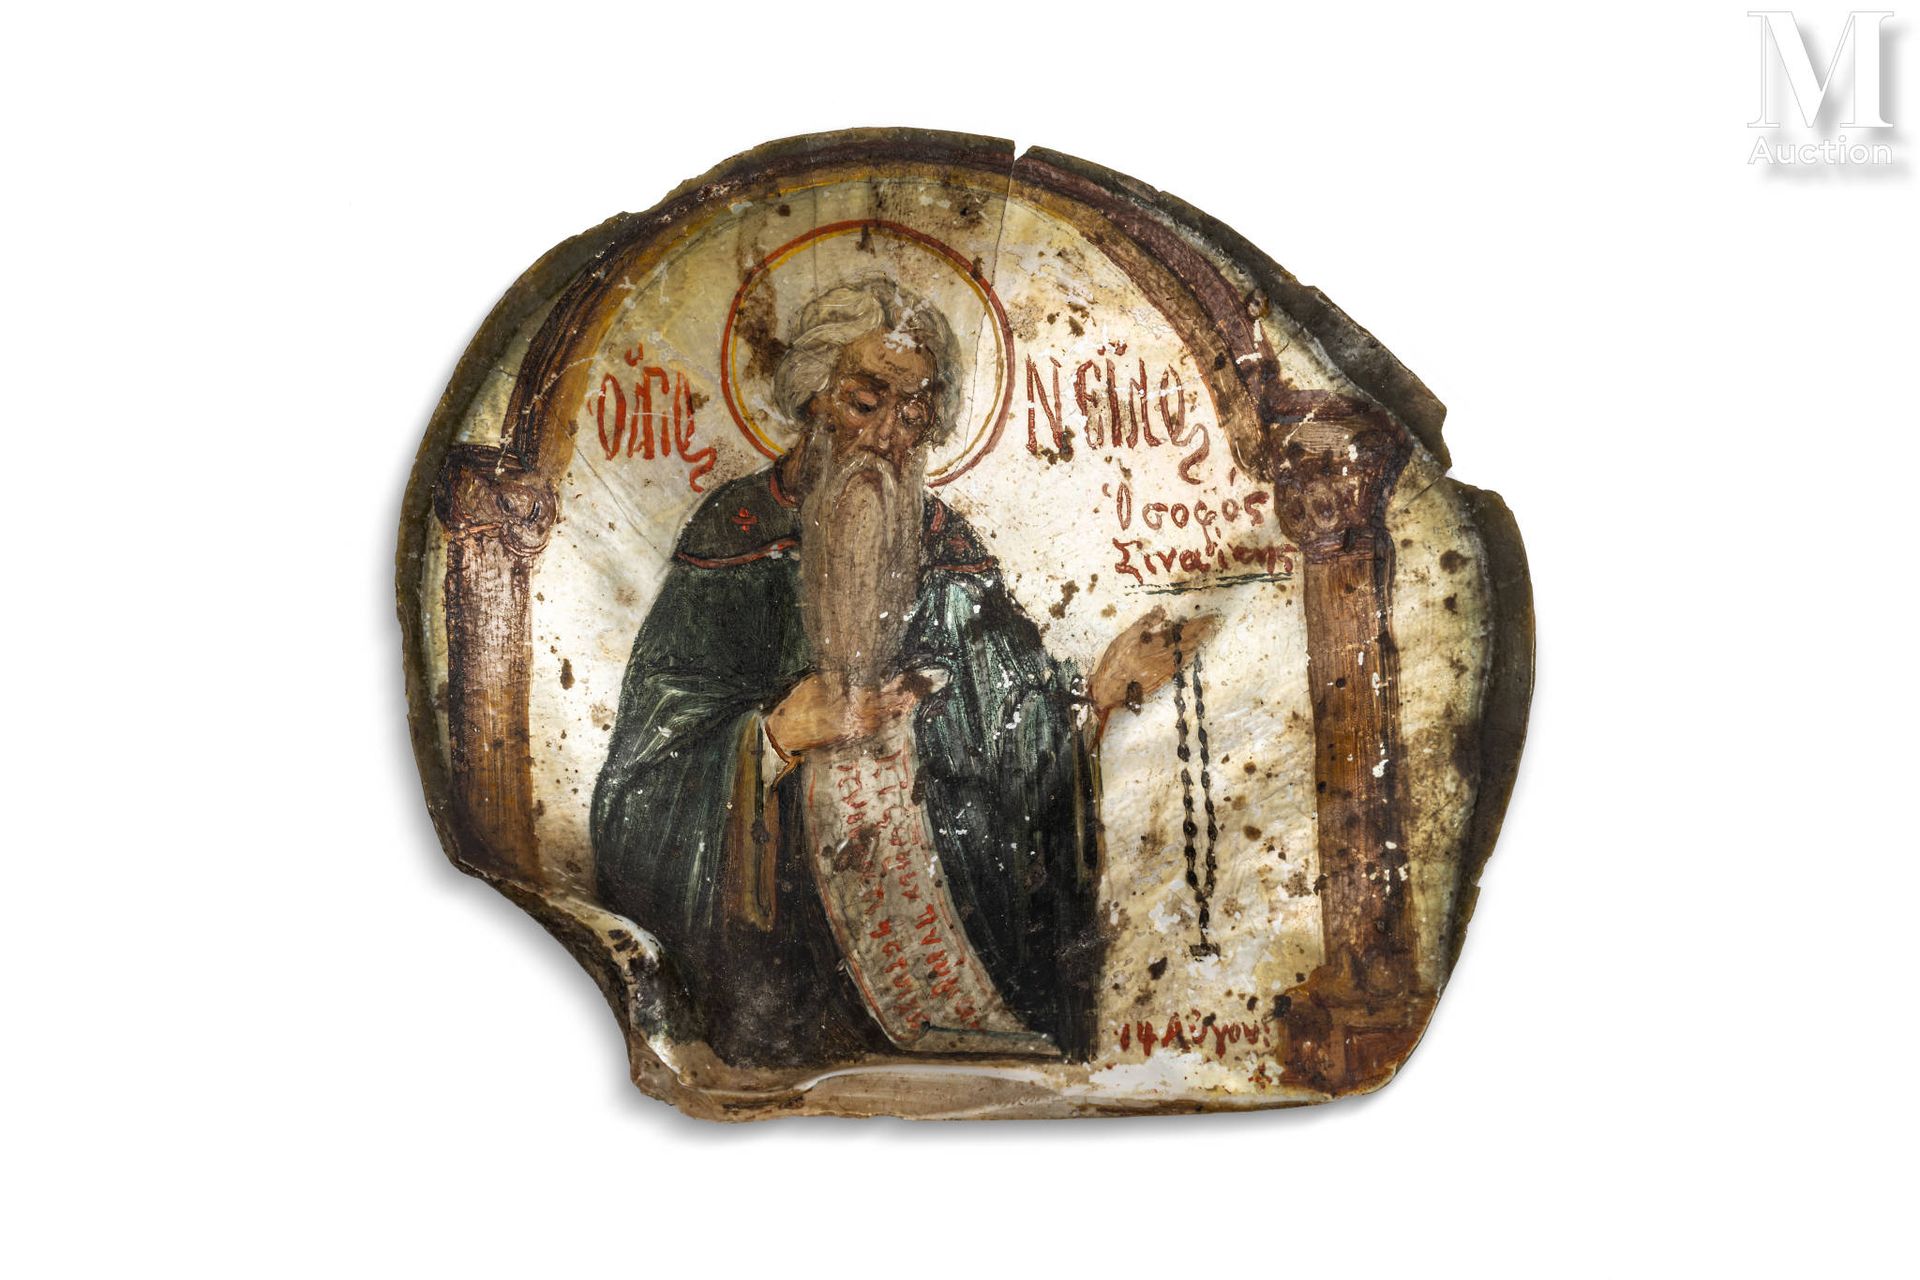 Pintadine à l'apôtre Jerusalén

Concha de nácar pintada en policromía e inscrita&hellip;